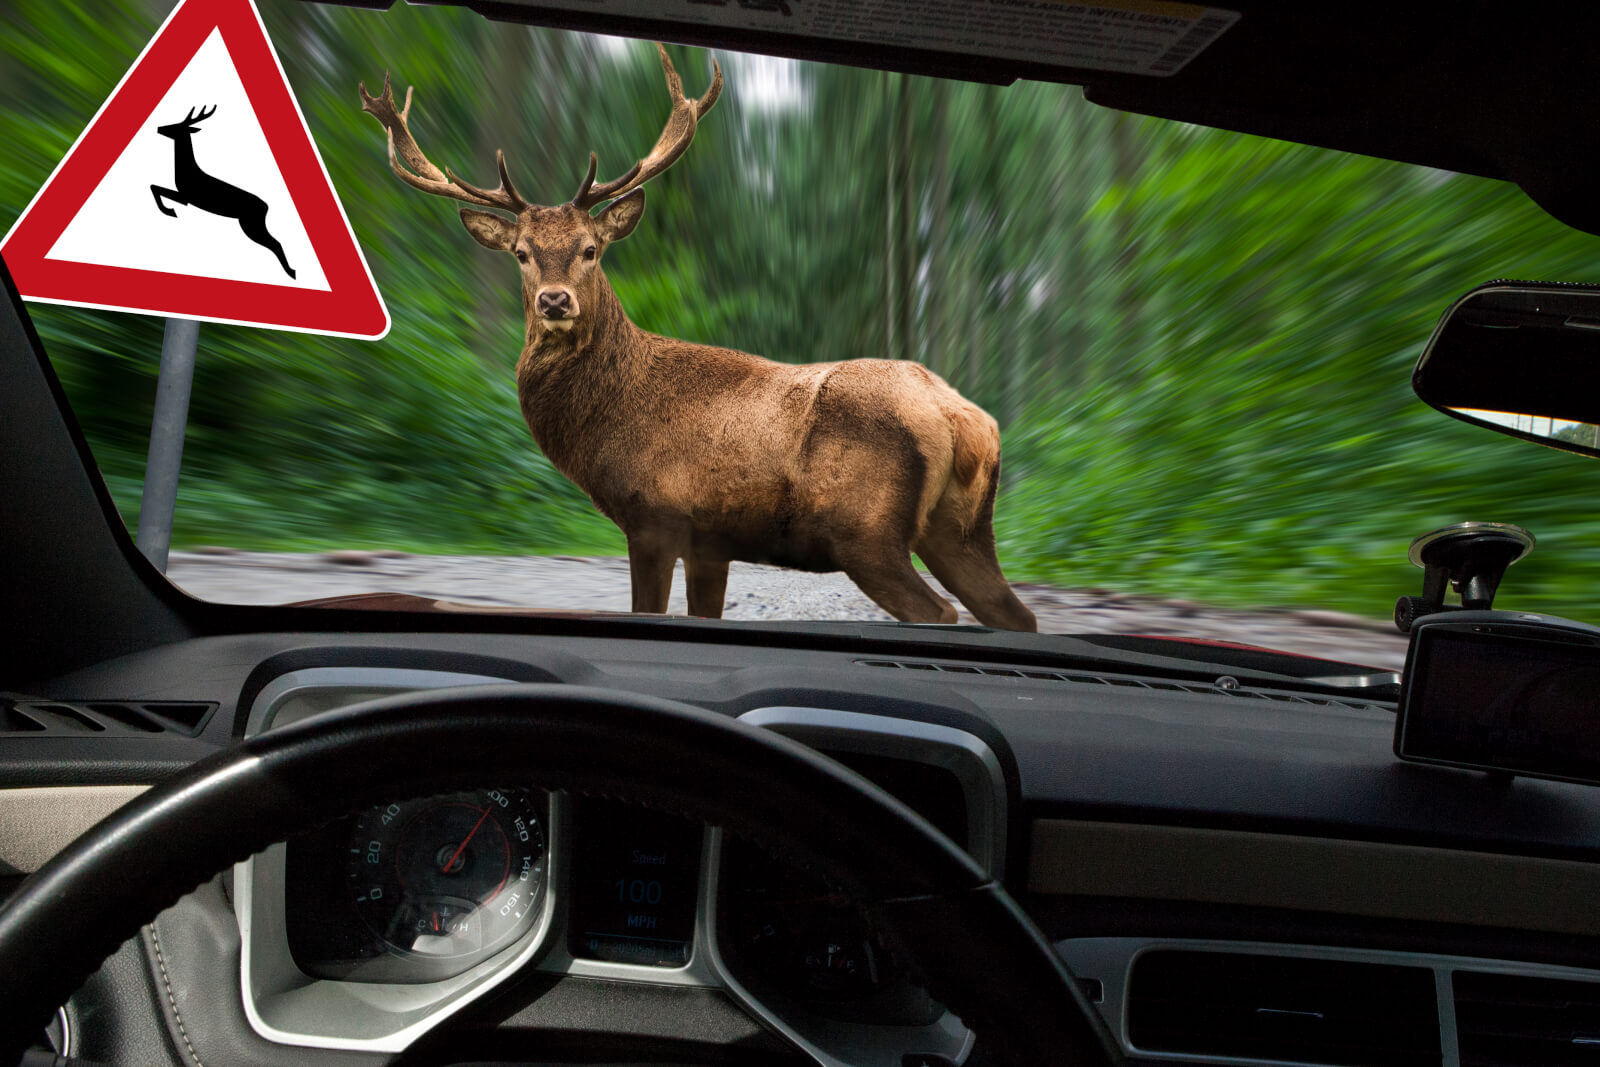 ロードキル 車で動物を轢いたときの対処法 法律 罰金や保険について Ancar Channel